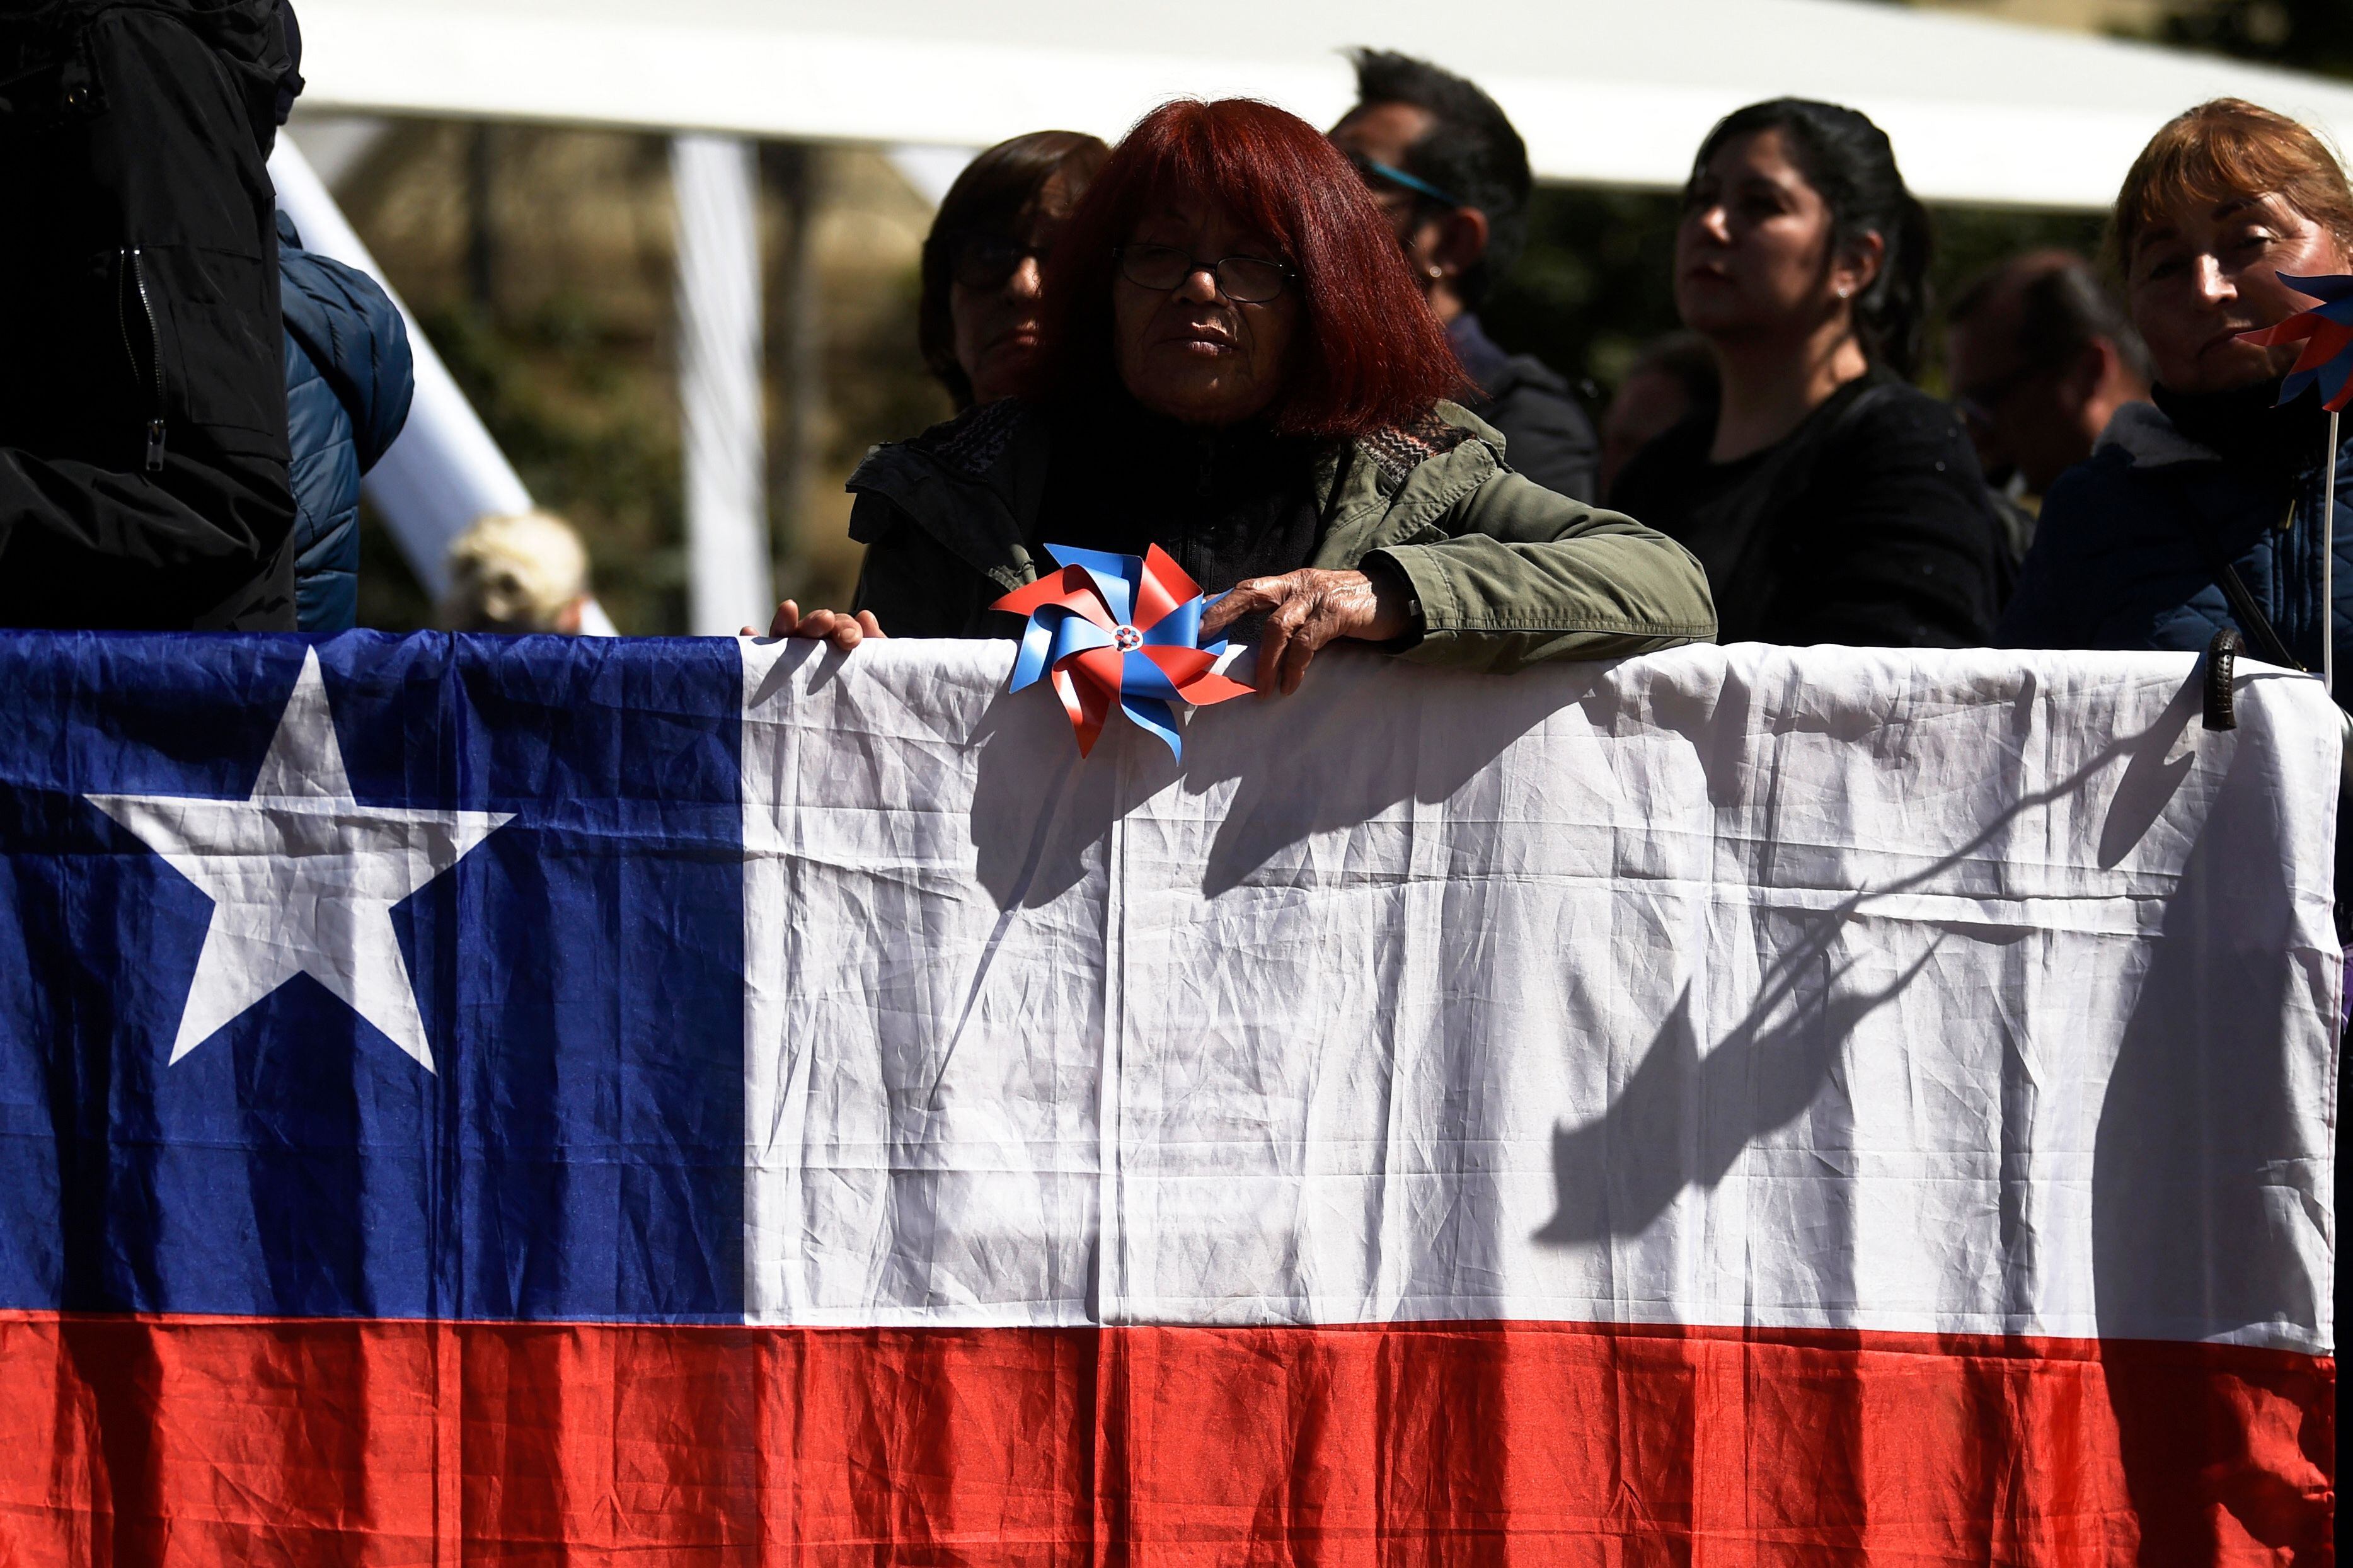 La nueva propuesta de Constitución introduce una norma que requiere la expulsión “en el menor tiempo posible” de extranjeros que ingresen a Chile, donde se calcula que en la última década 1,7 millones de migrantes ingresaron a ese país.